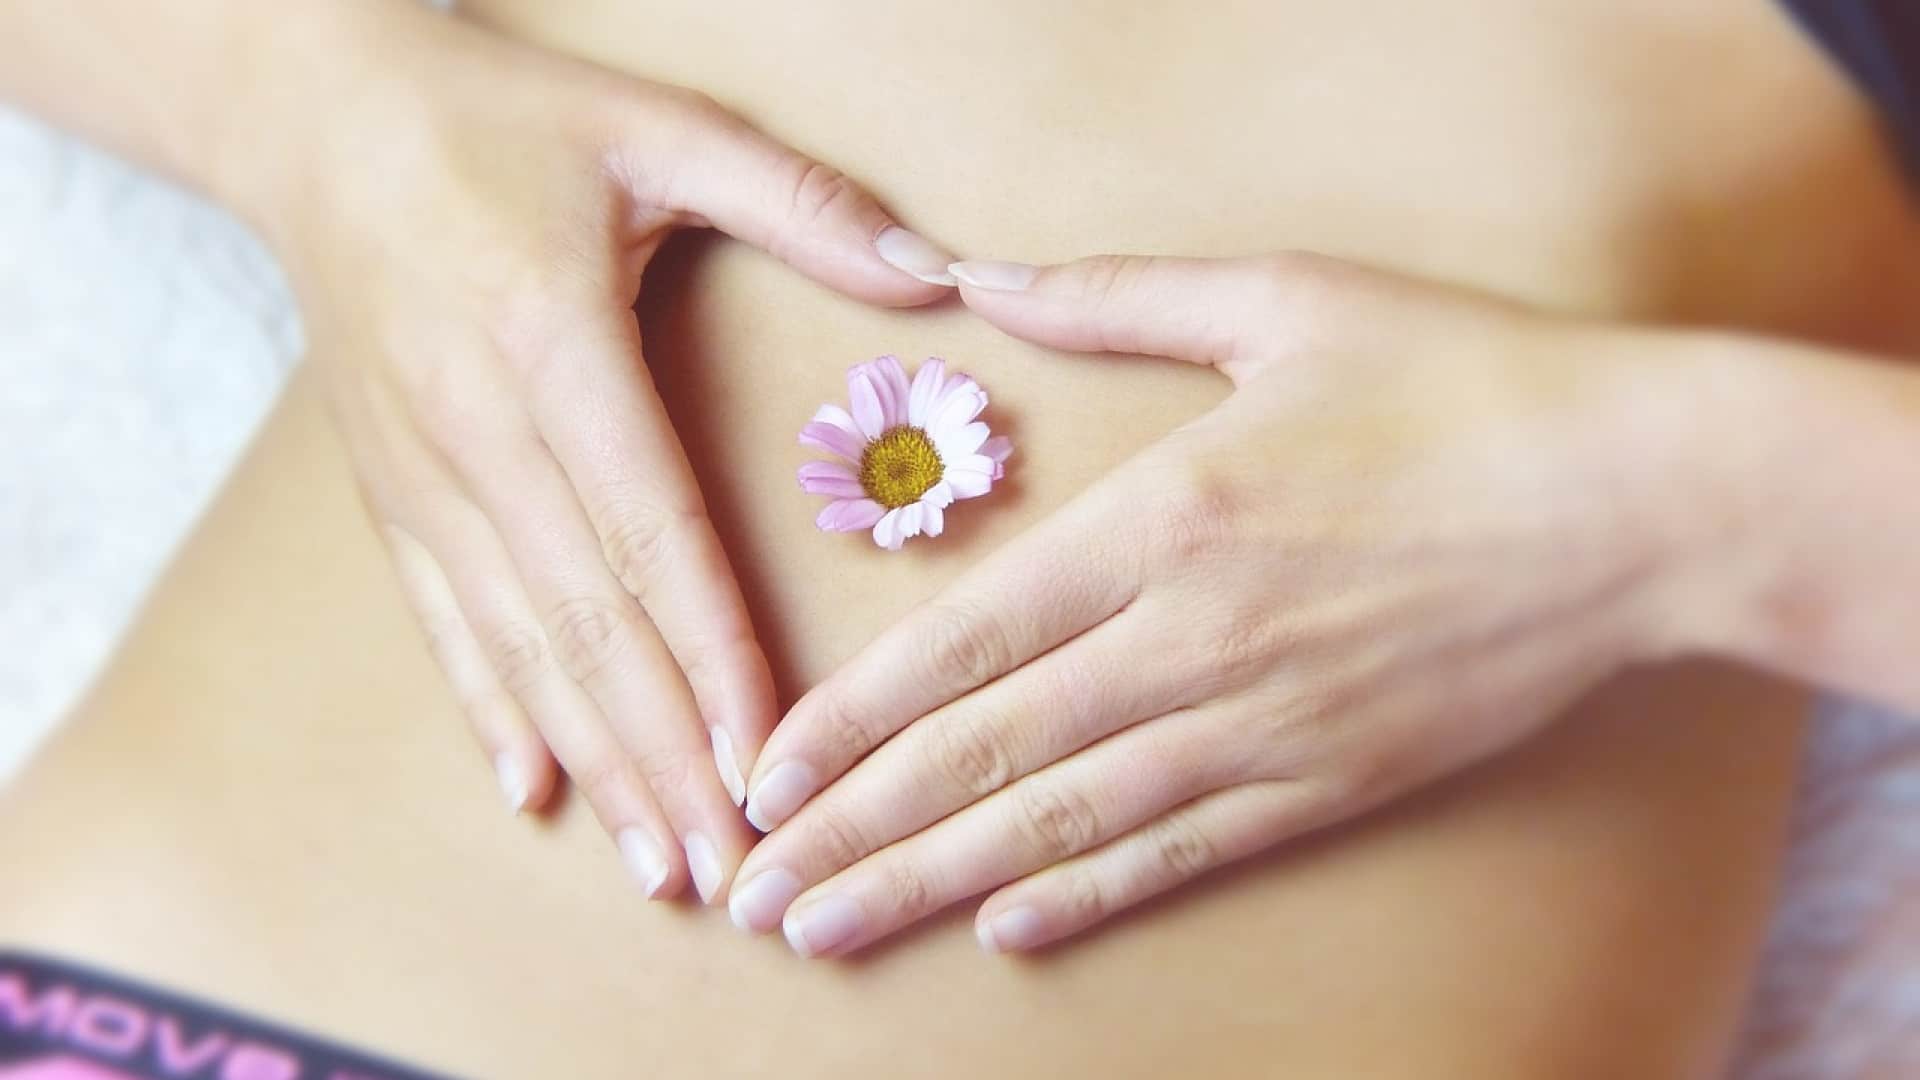 Les mains d'une femme formant un coeur sur le ventre avec une fleur au centre.